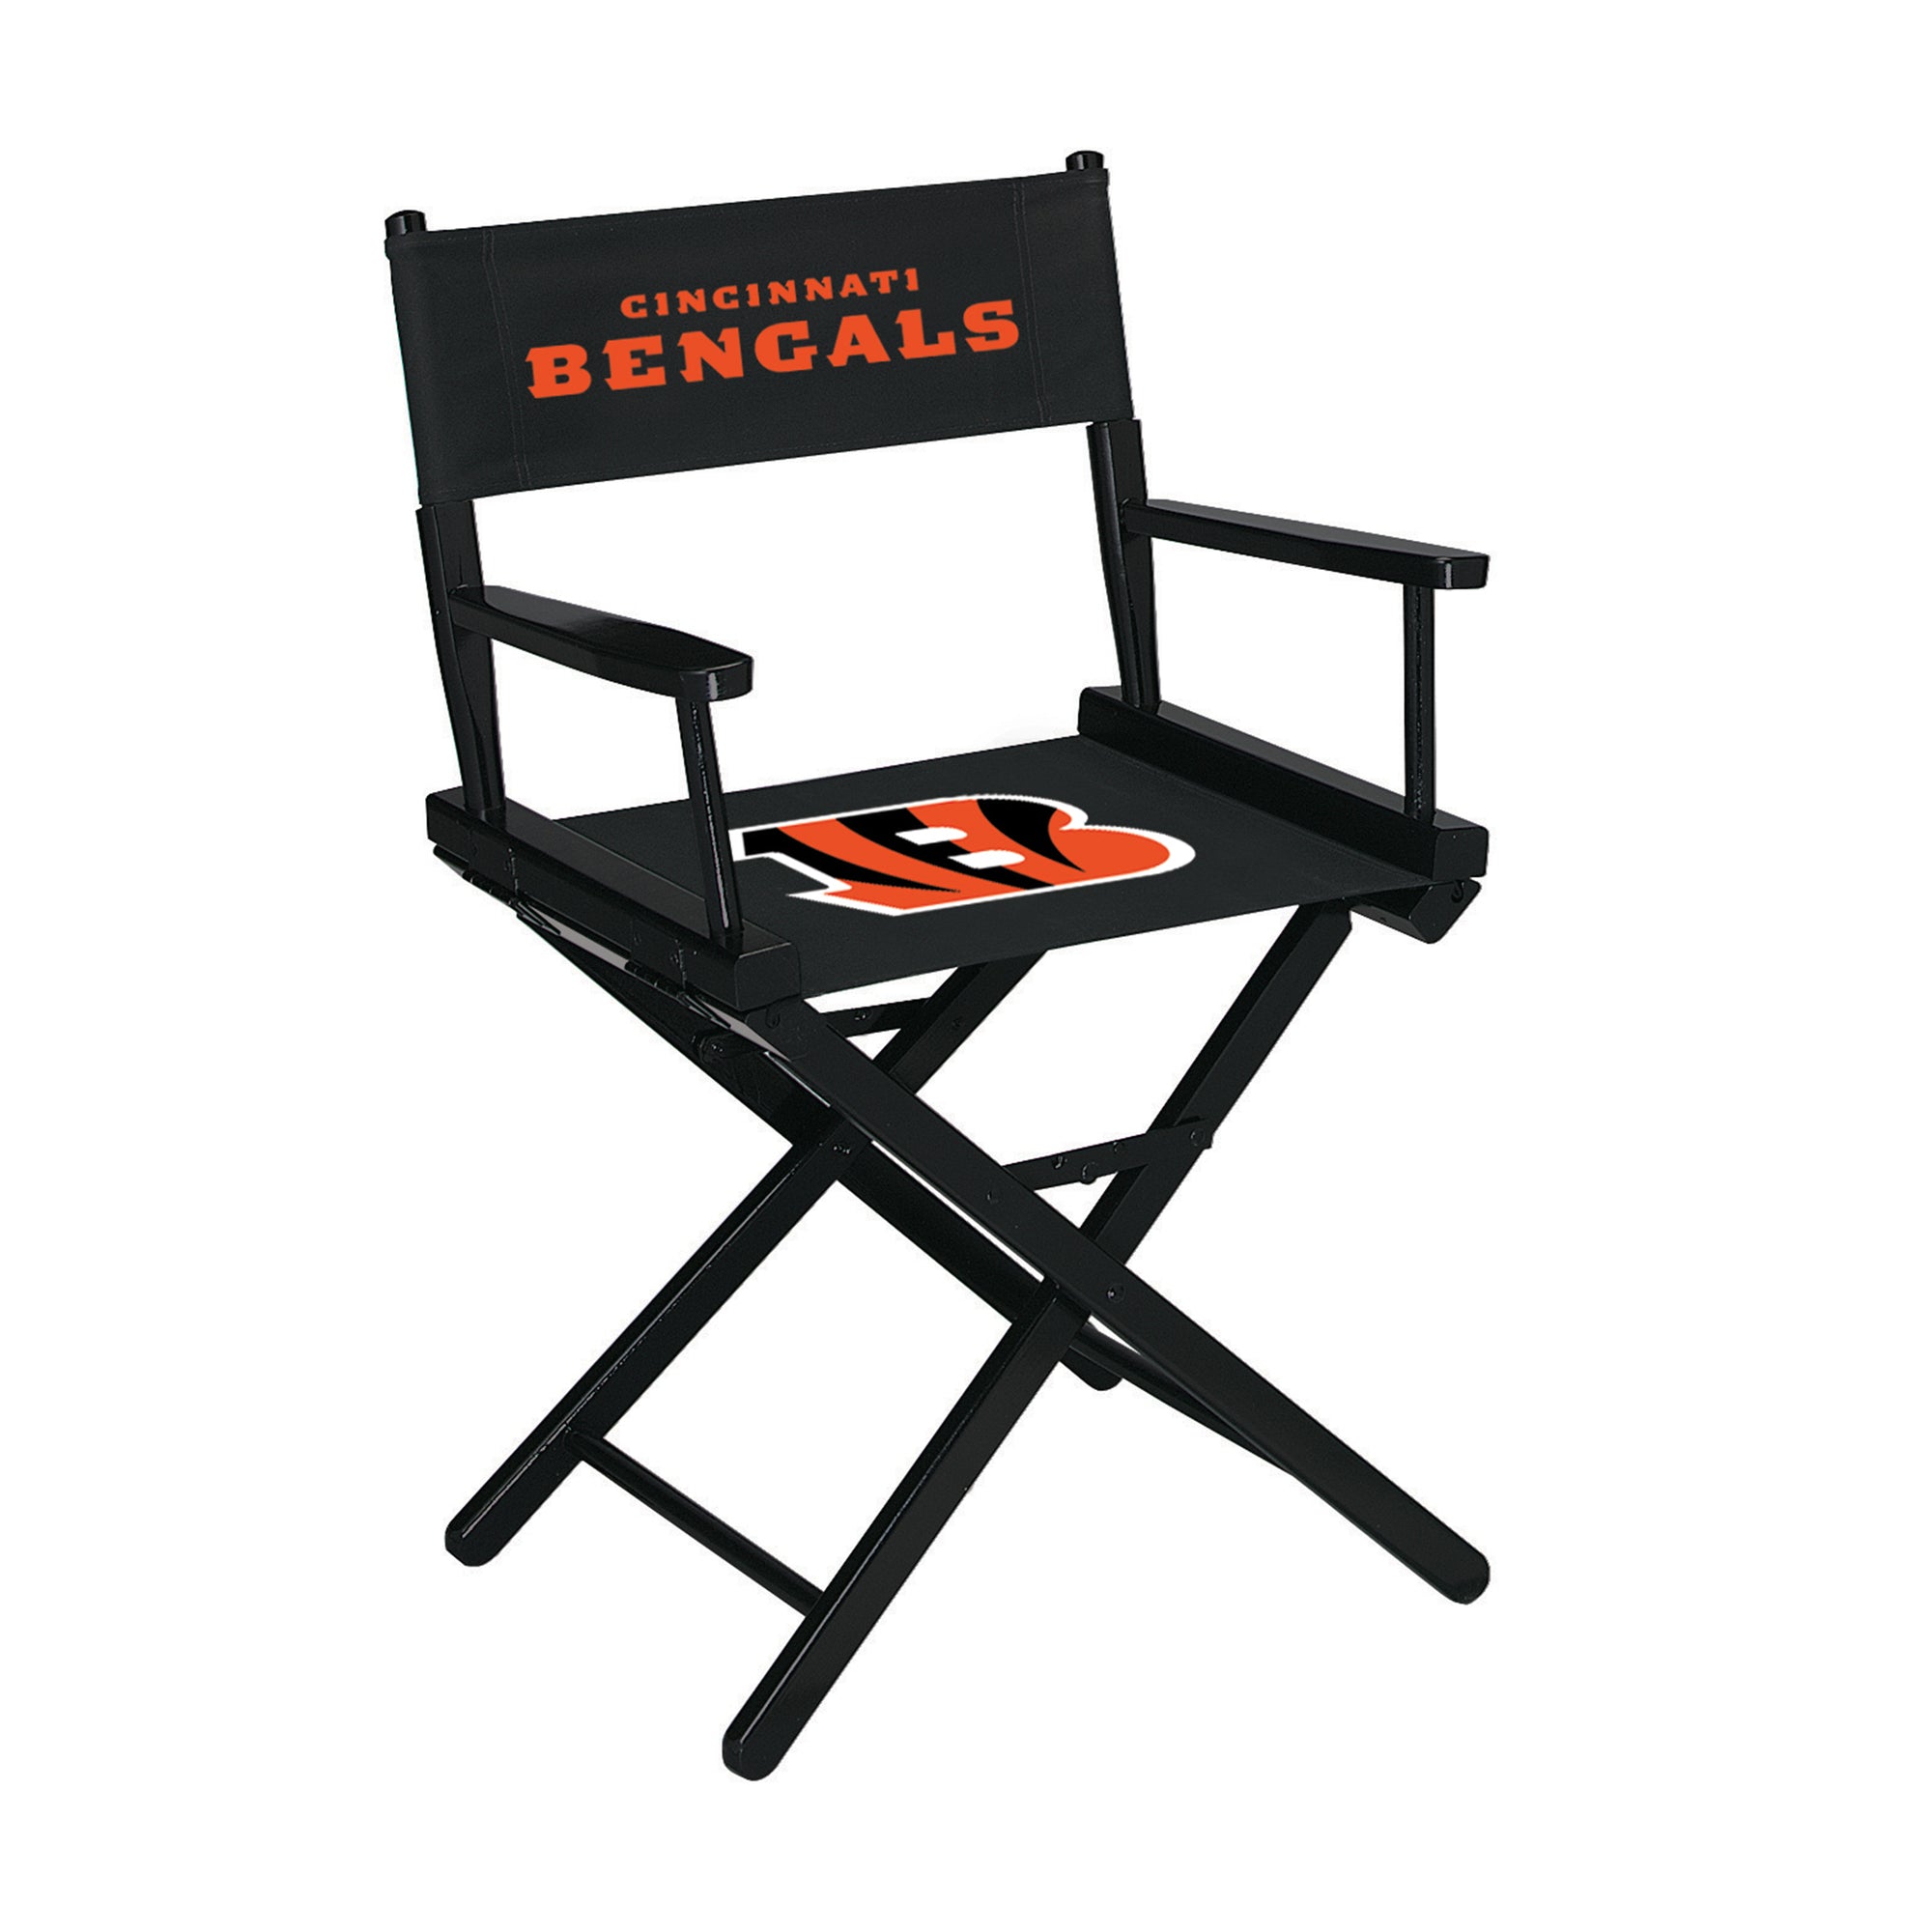 Cincinnati Bengals Table Height Directors Chair